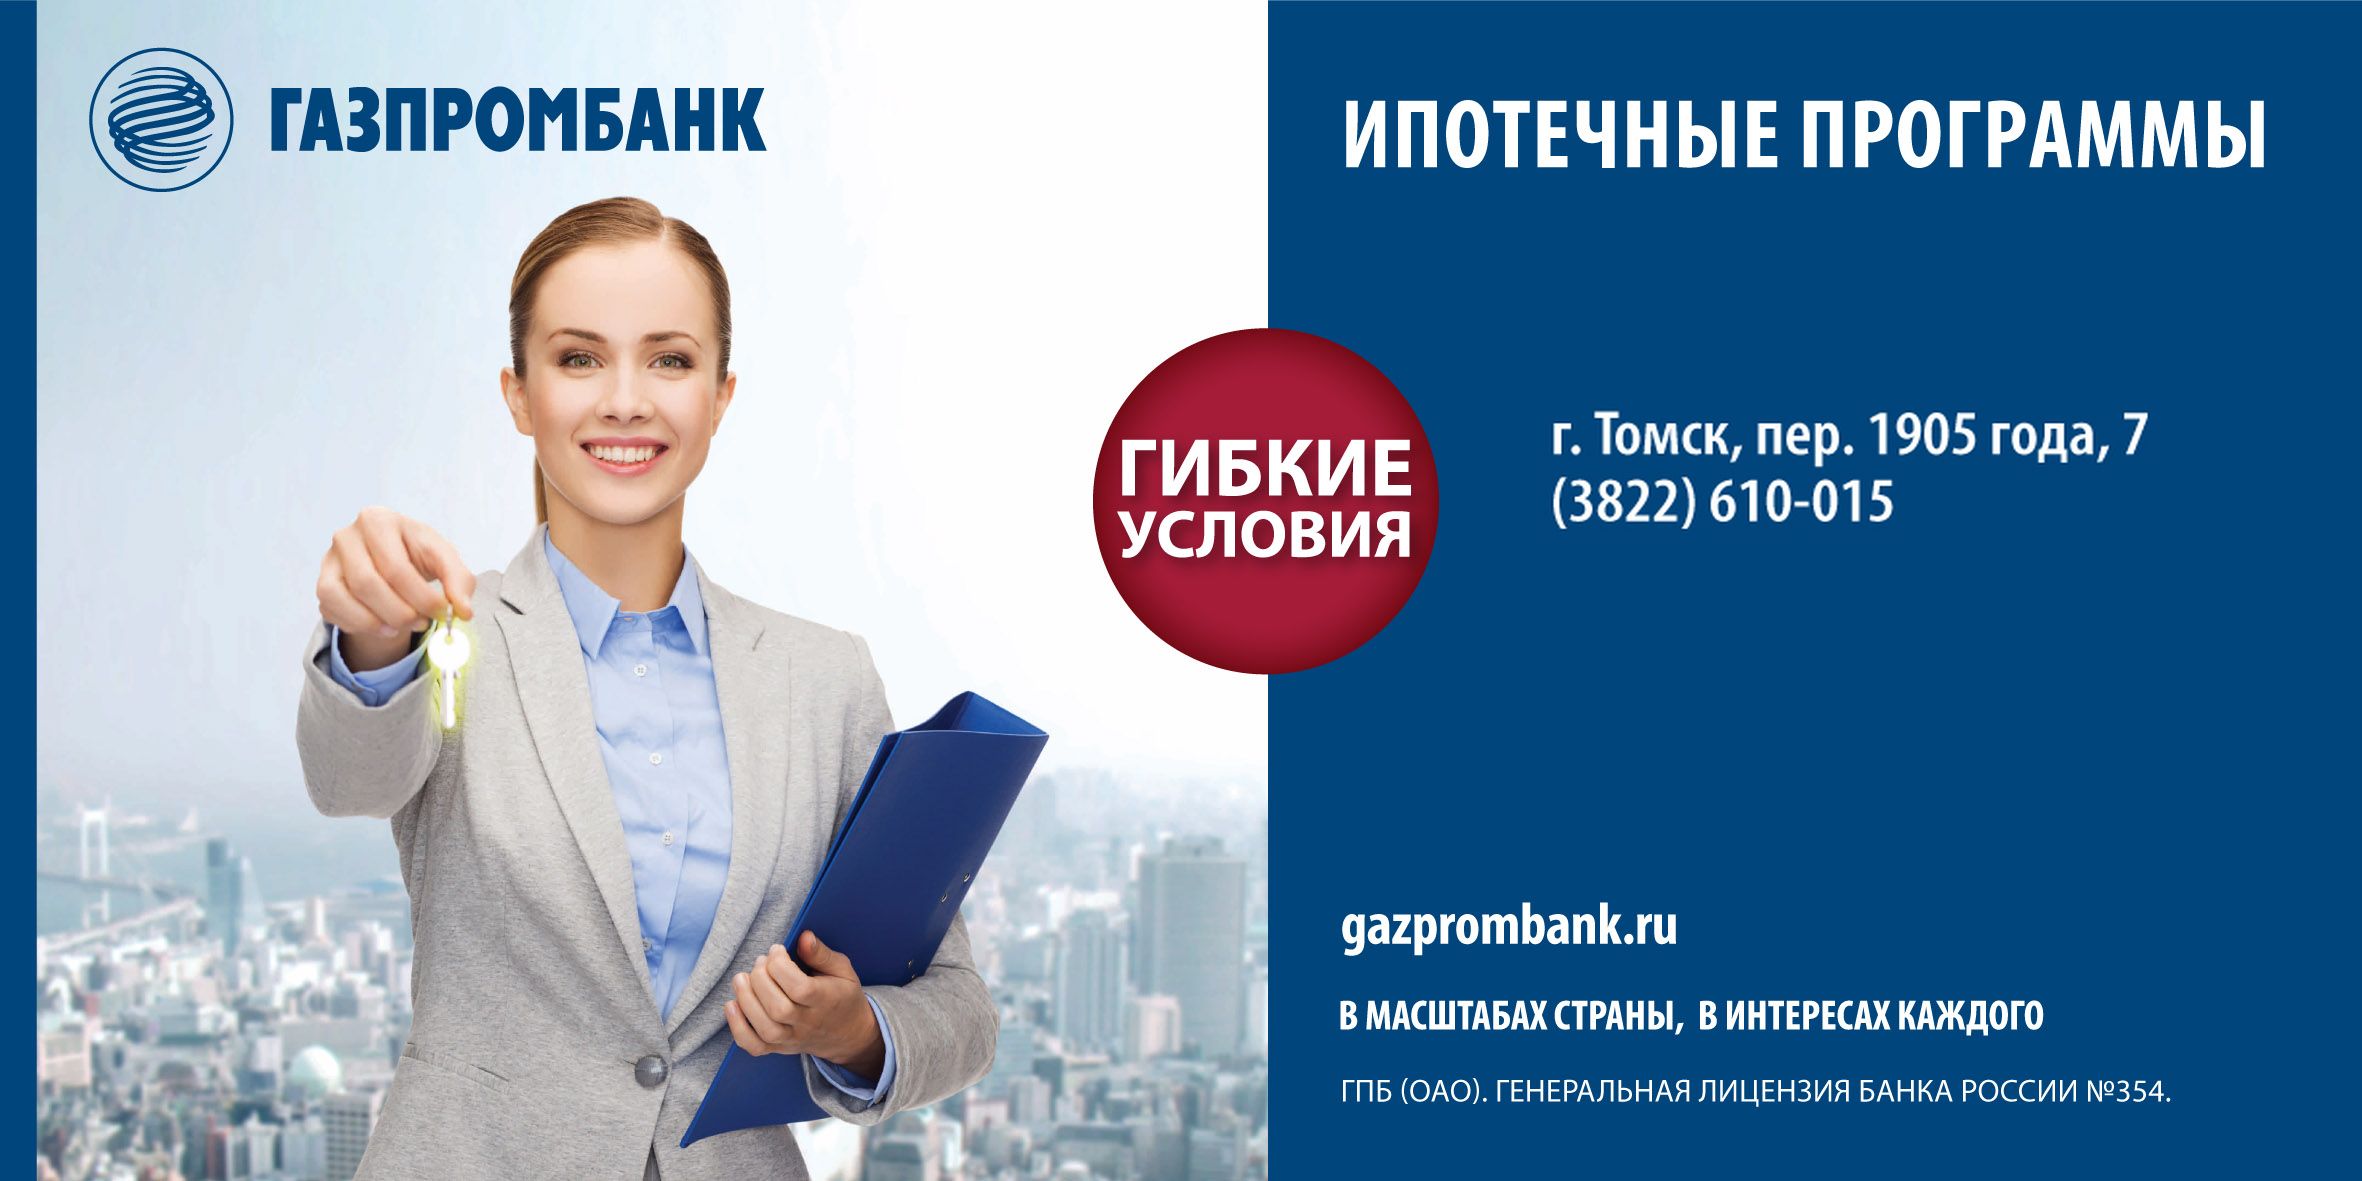 Ипотечное приложением. Газпромбанк реклама. Газпромбанк реклама ипотеки. Газпромбанк ипотека программы. Ипотека в Газпромбанке условия.